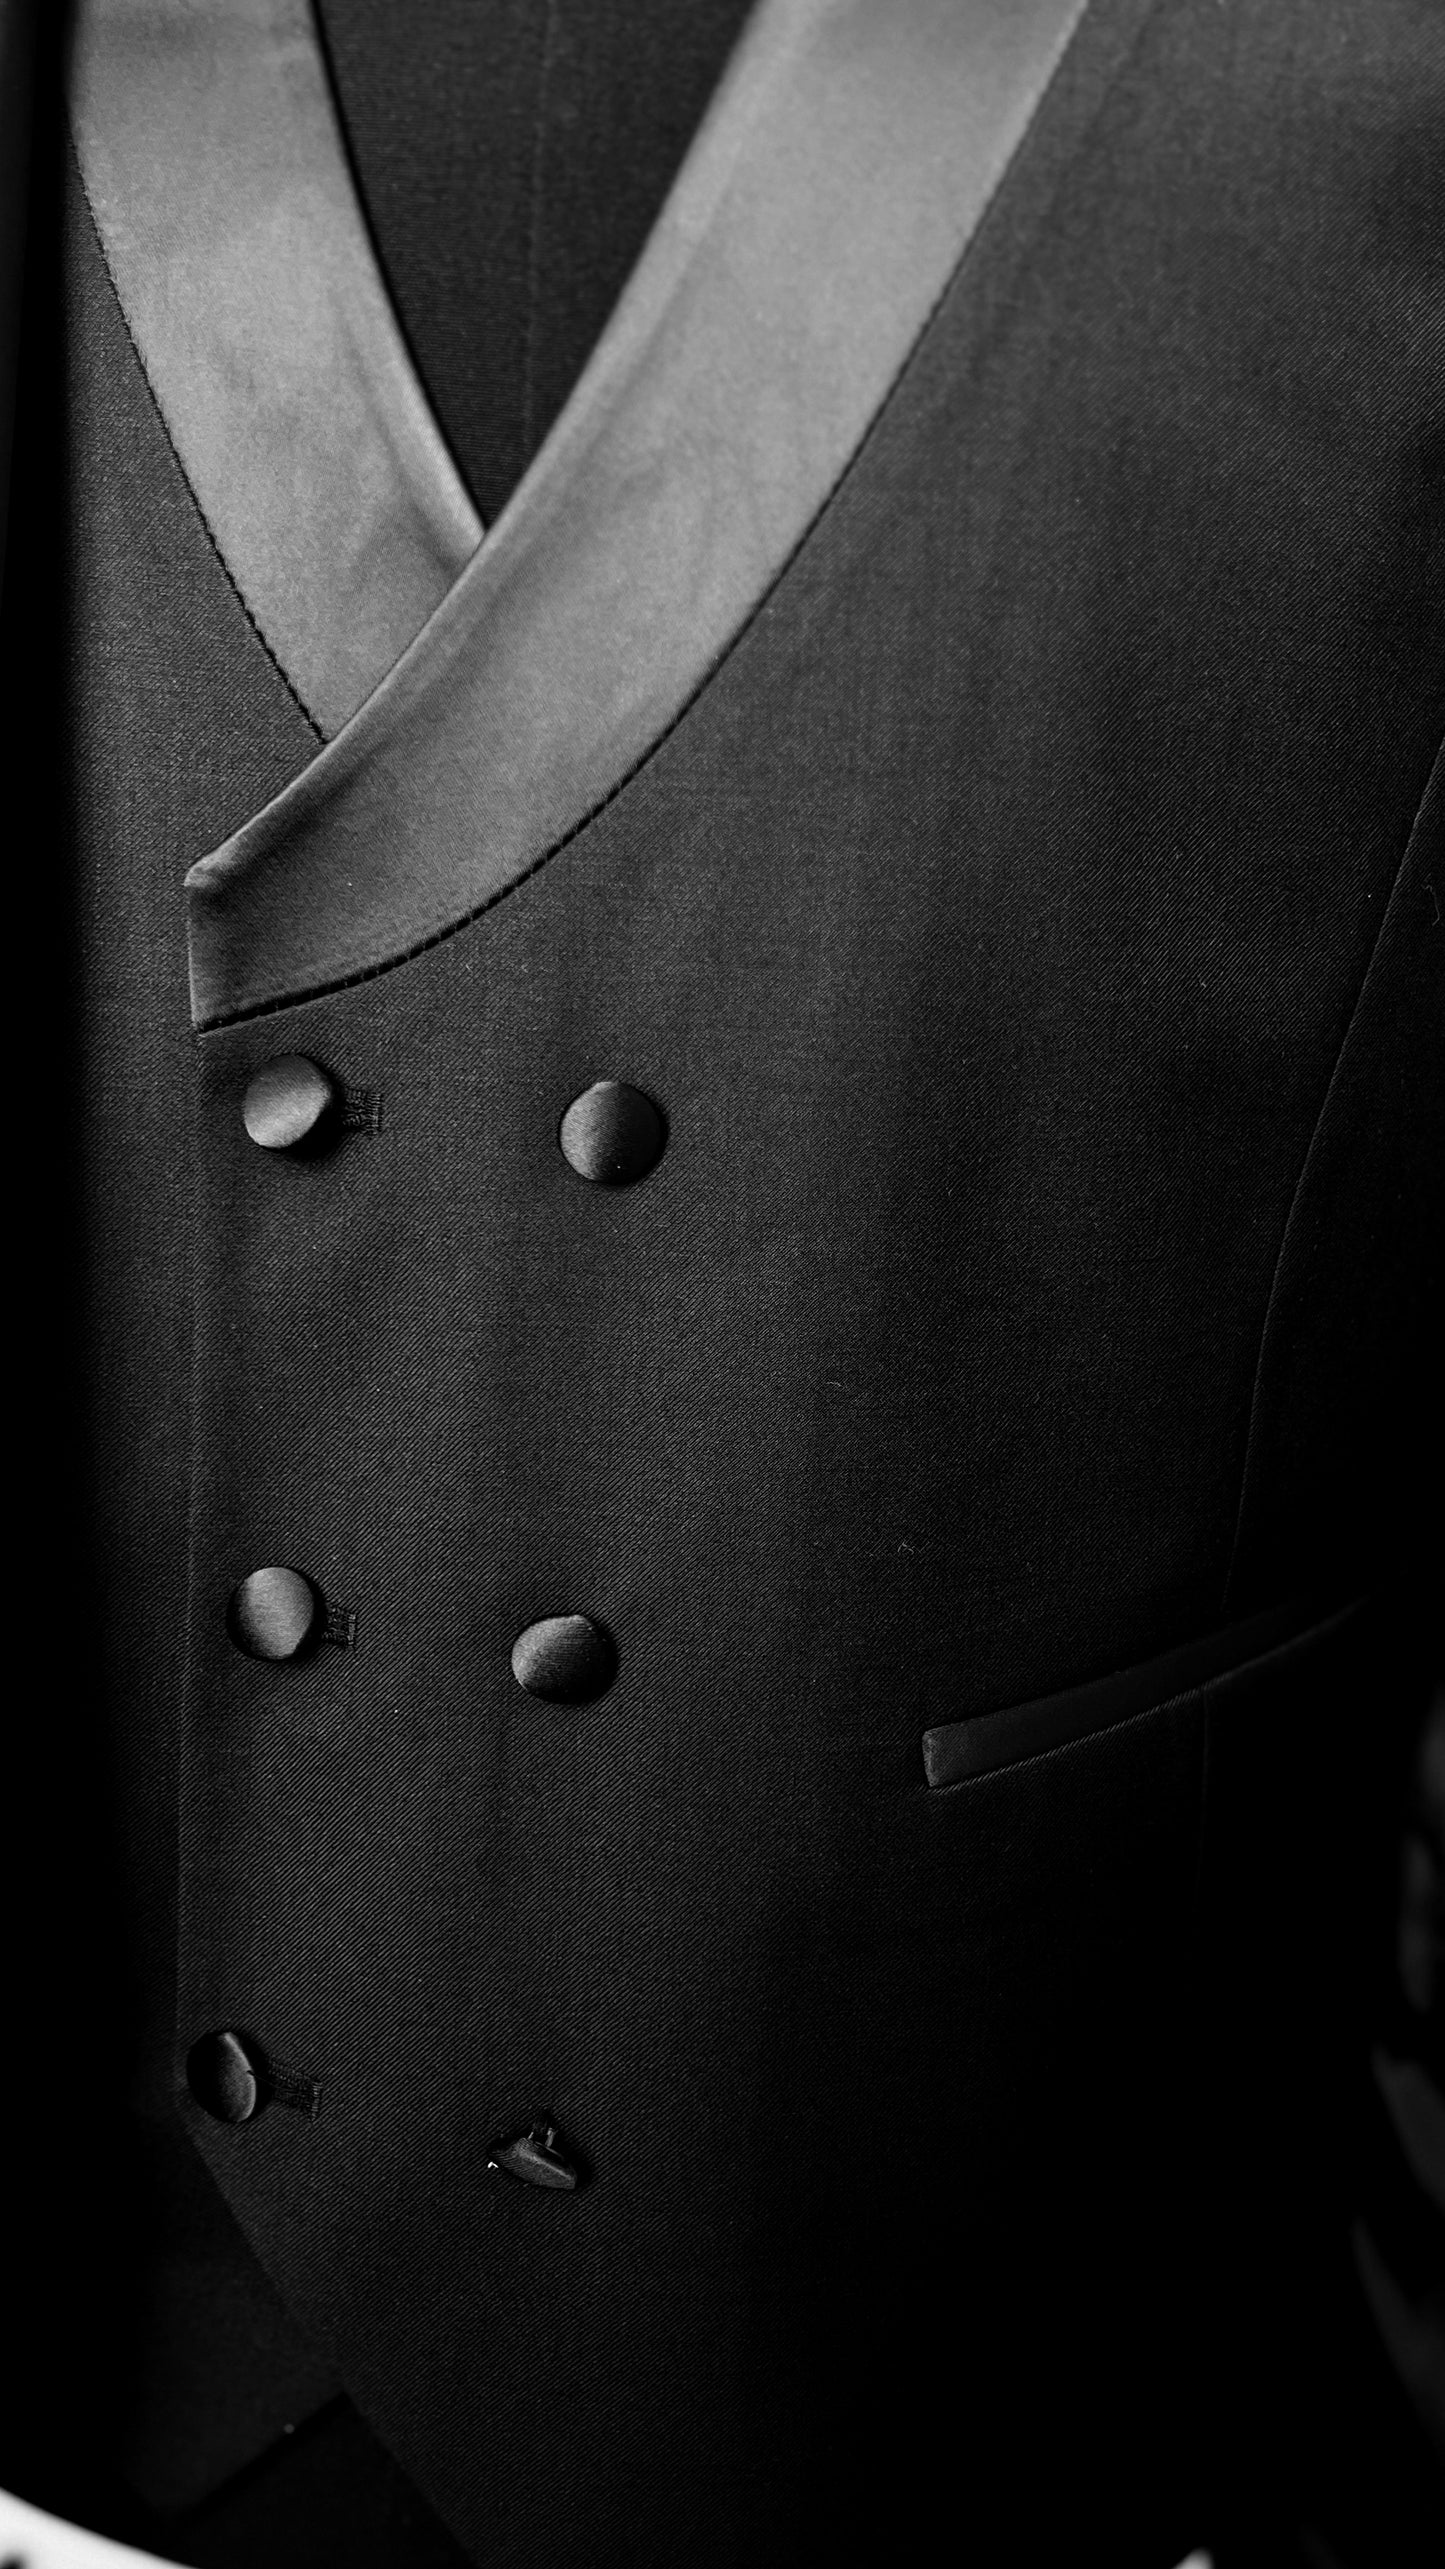 Edgers Alabaster Sophisticate Men's Four-Piece Suit